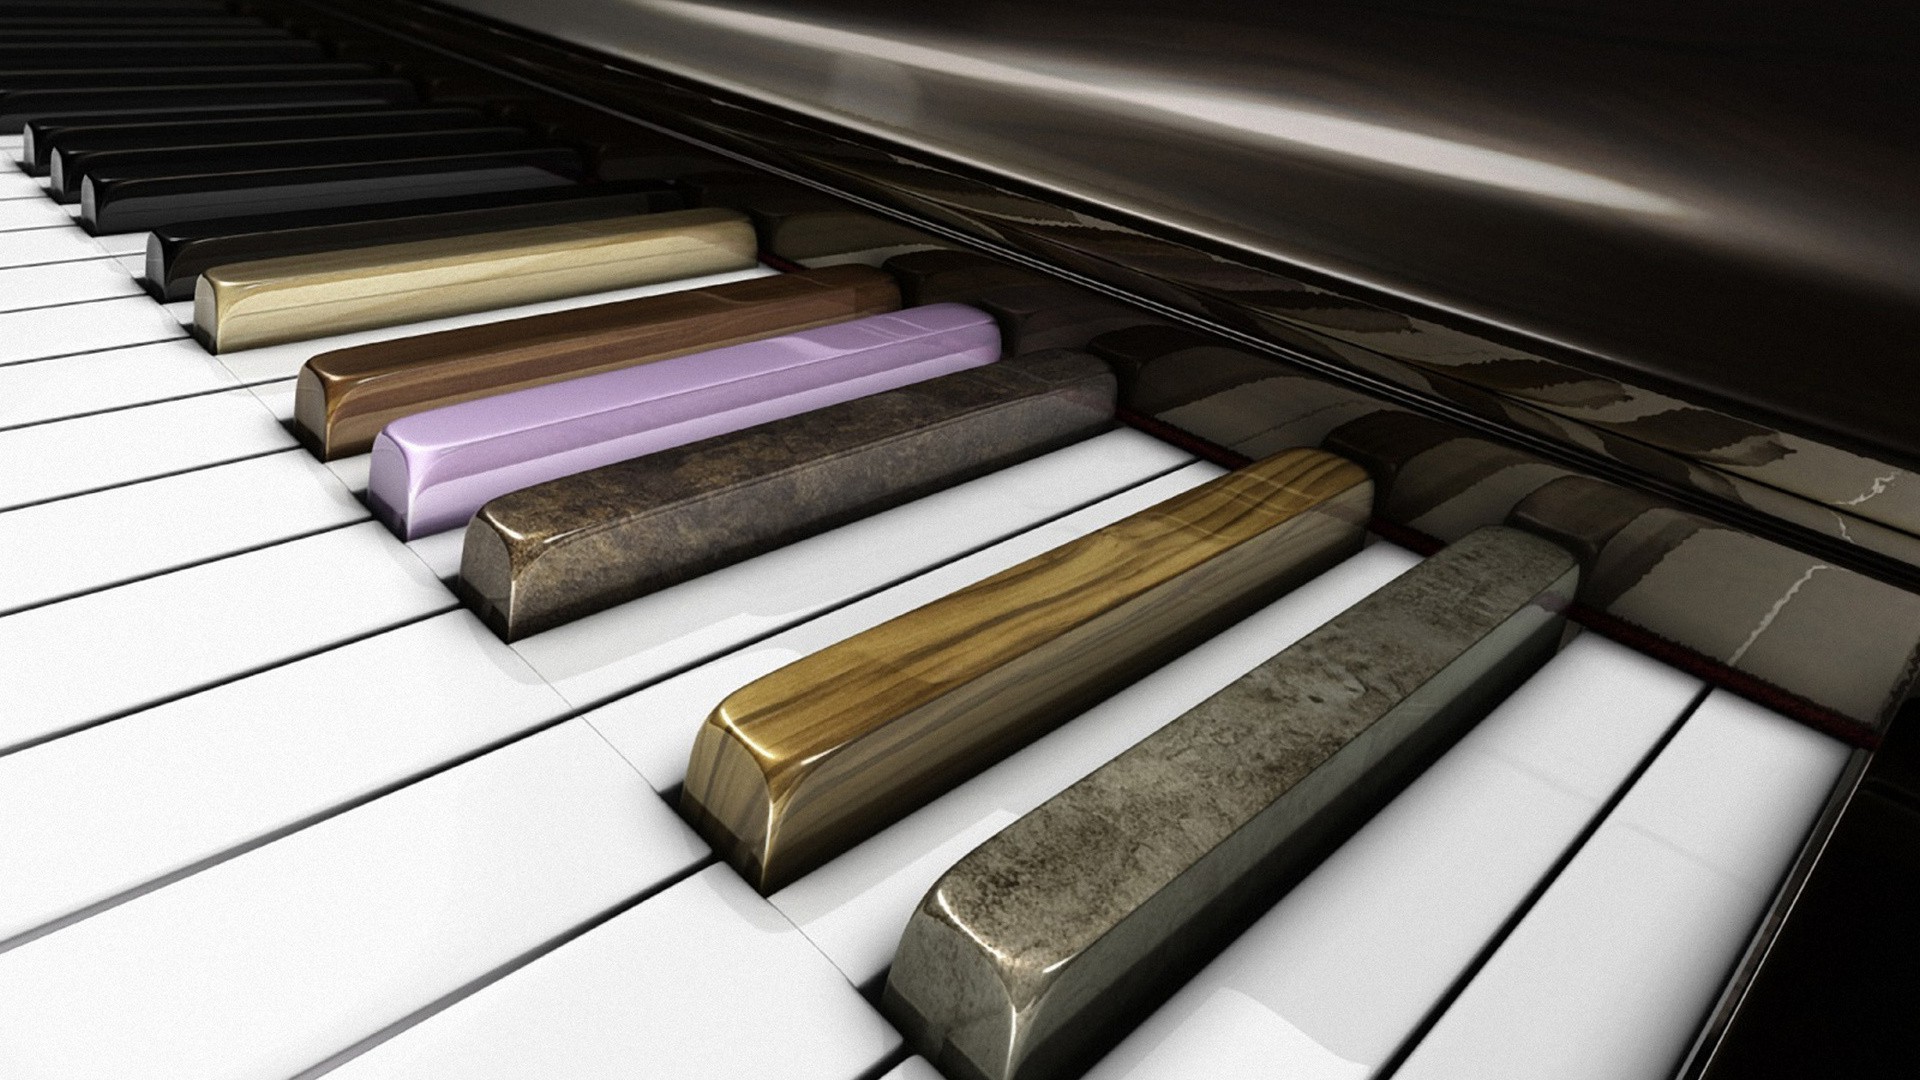 700000 ảnh đẹp nhất về Đàn Piano  Tải xuống miễn phí 100  Ảnh có sẵn  của Pexels